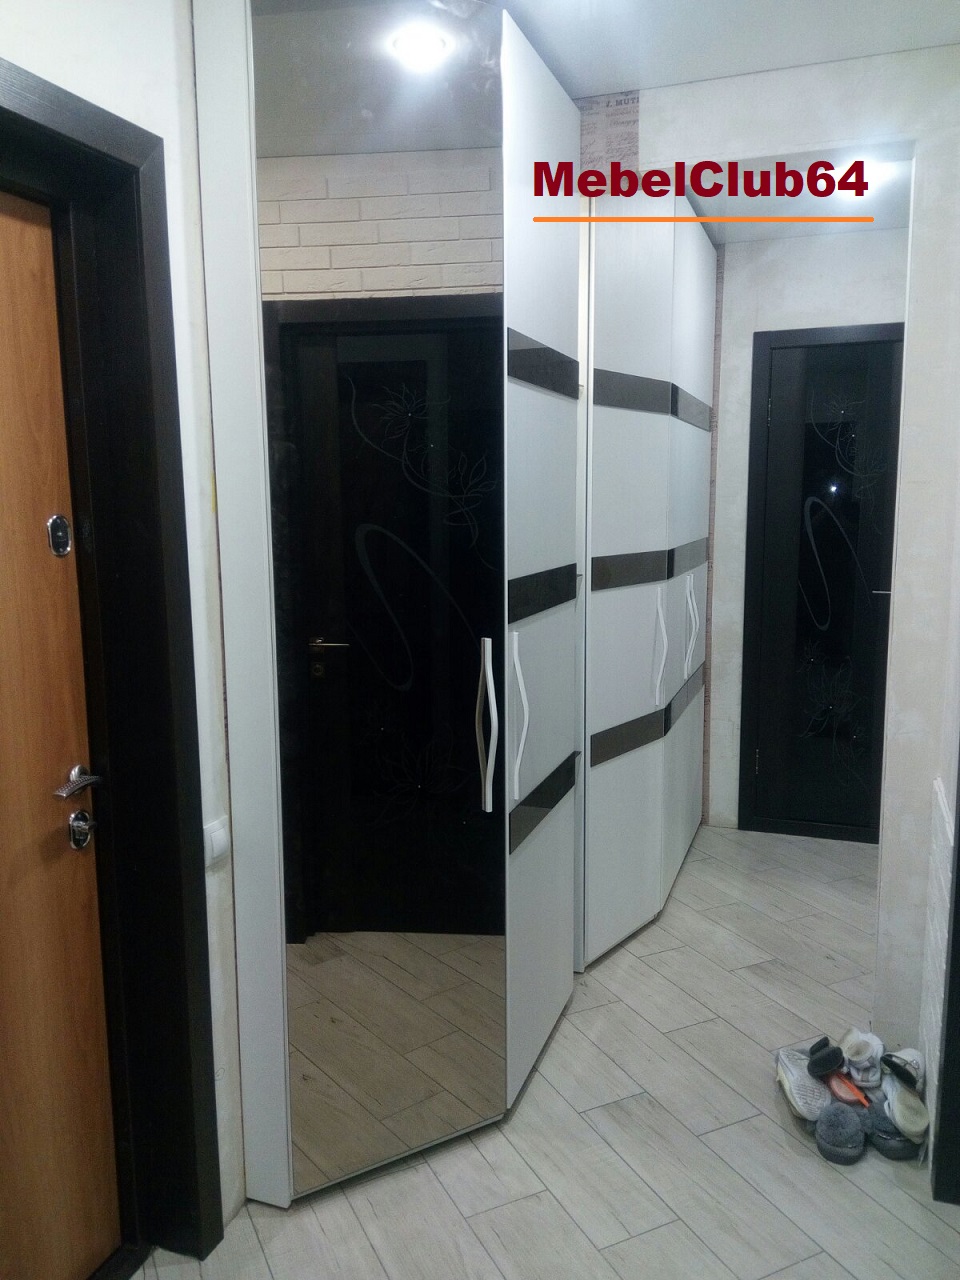 картинка 2 Распашных шкафа со стеклянными полками между ними (Заказ № 121 от 23.08.20) от сети мебельных салонов MebelClub